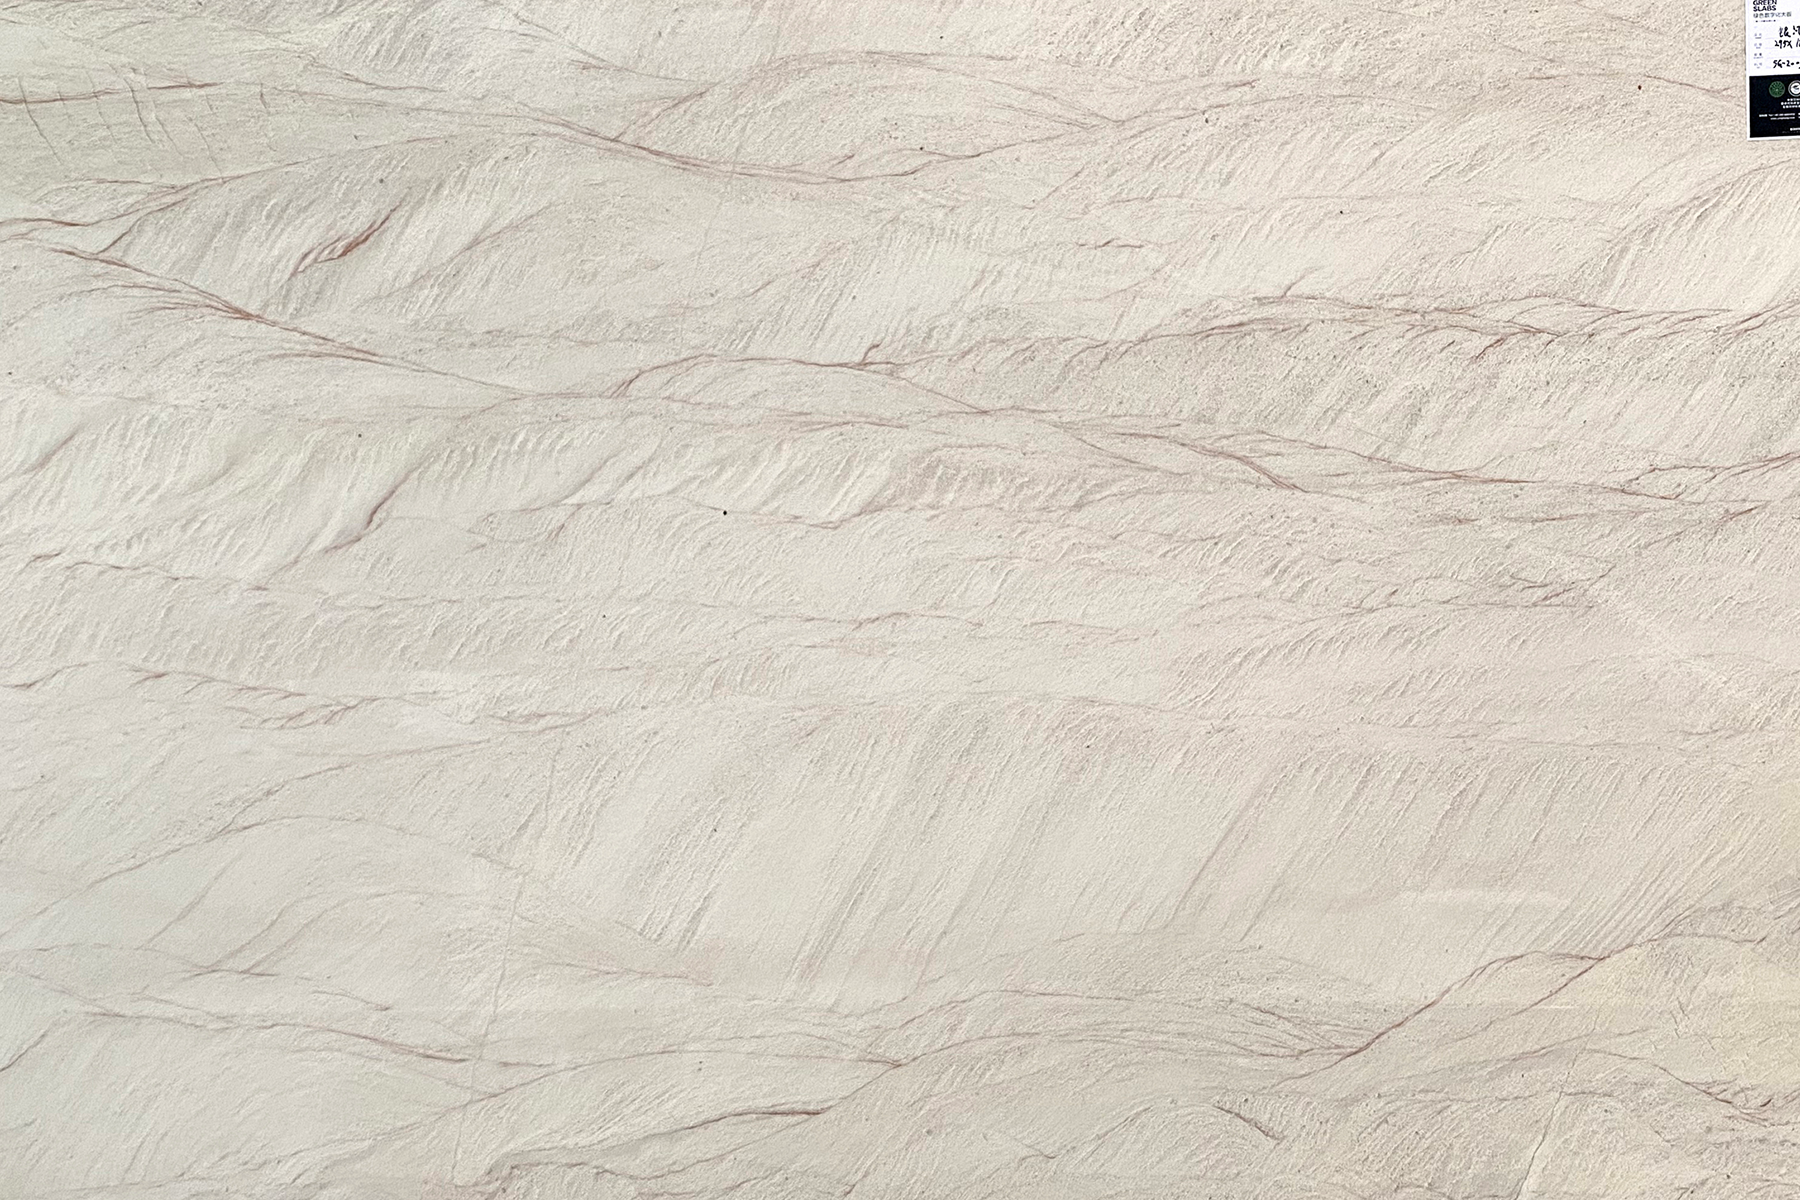 Galaxy white quartzite slabs white marble